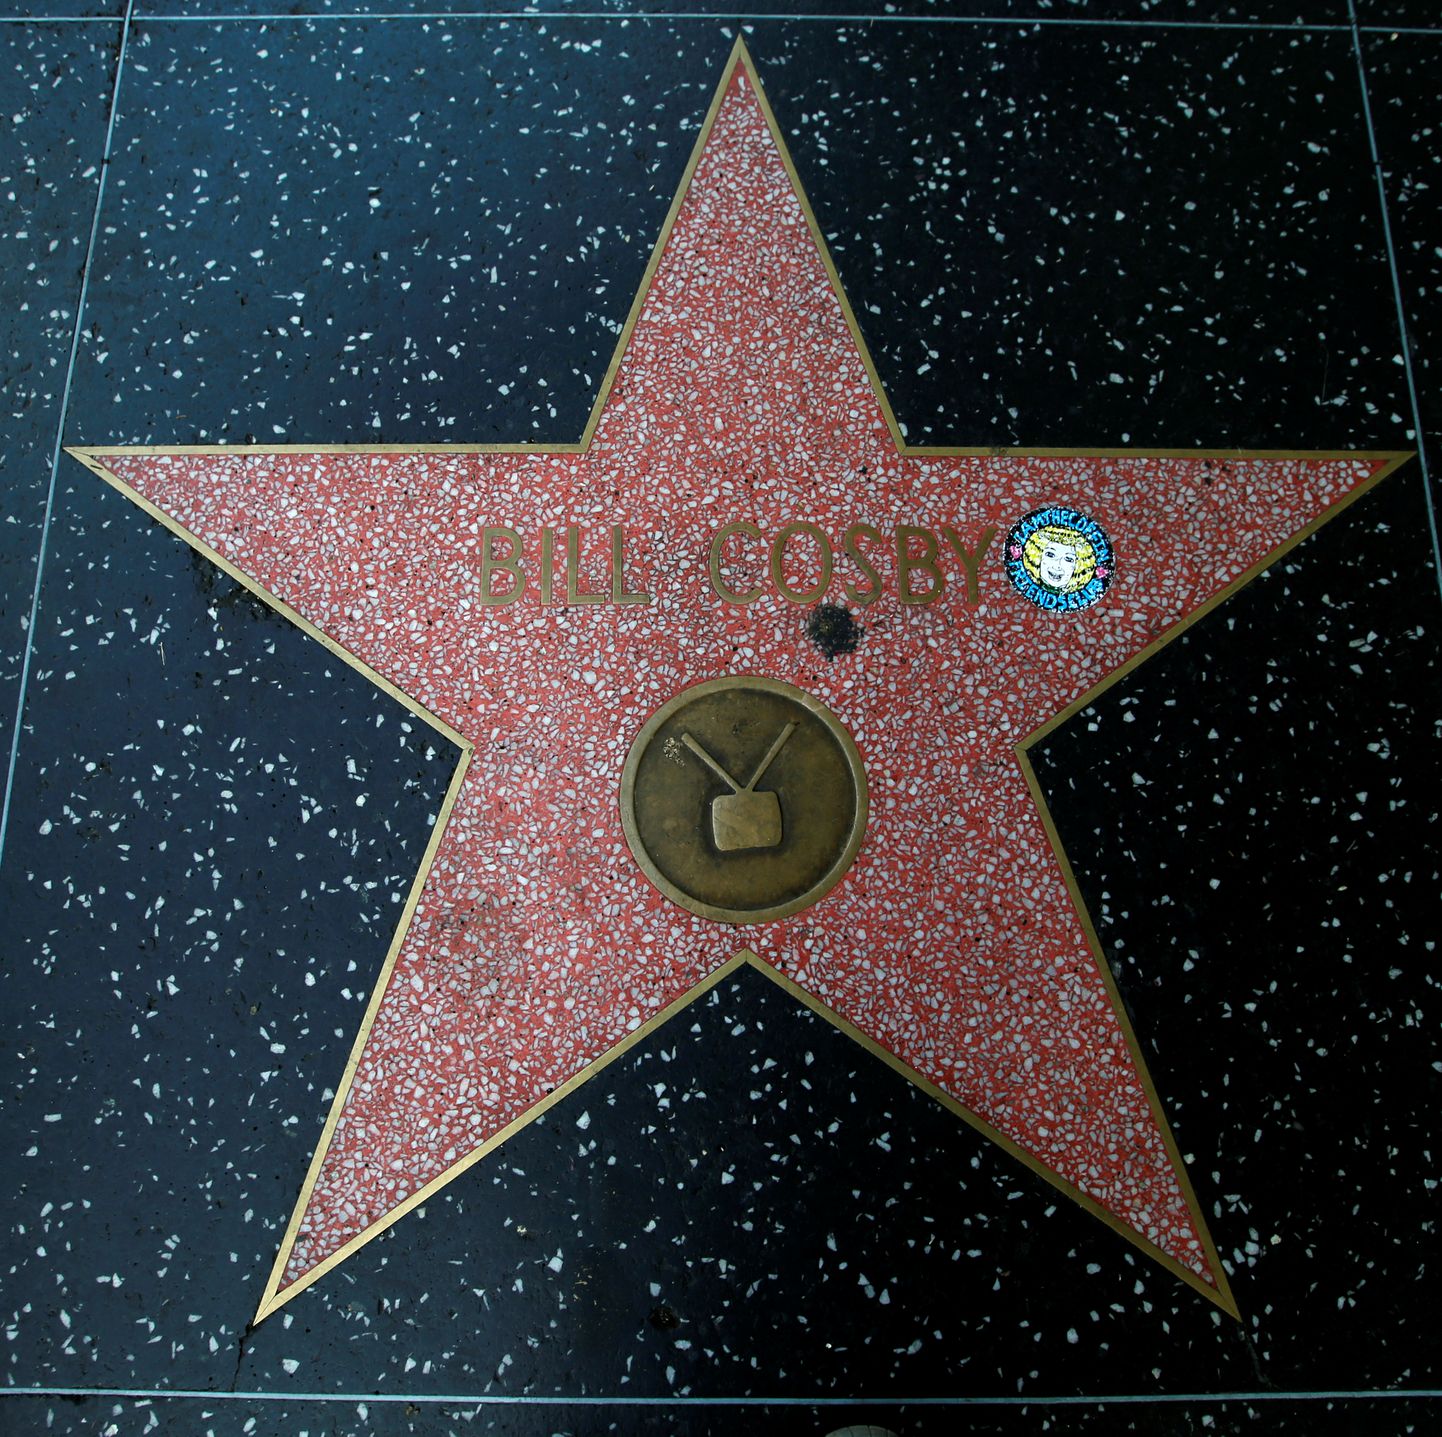 Koomik Bill Cosby täht Hollywoodi kuulsuste alleel.